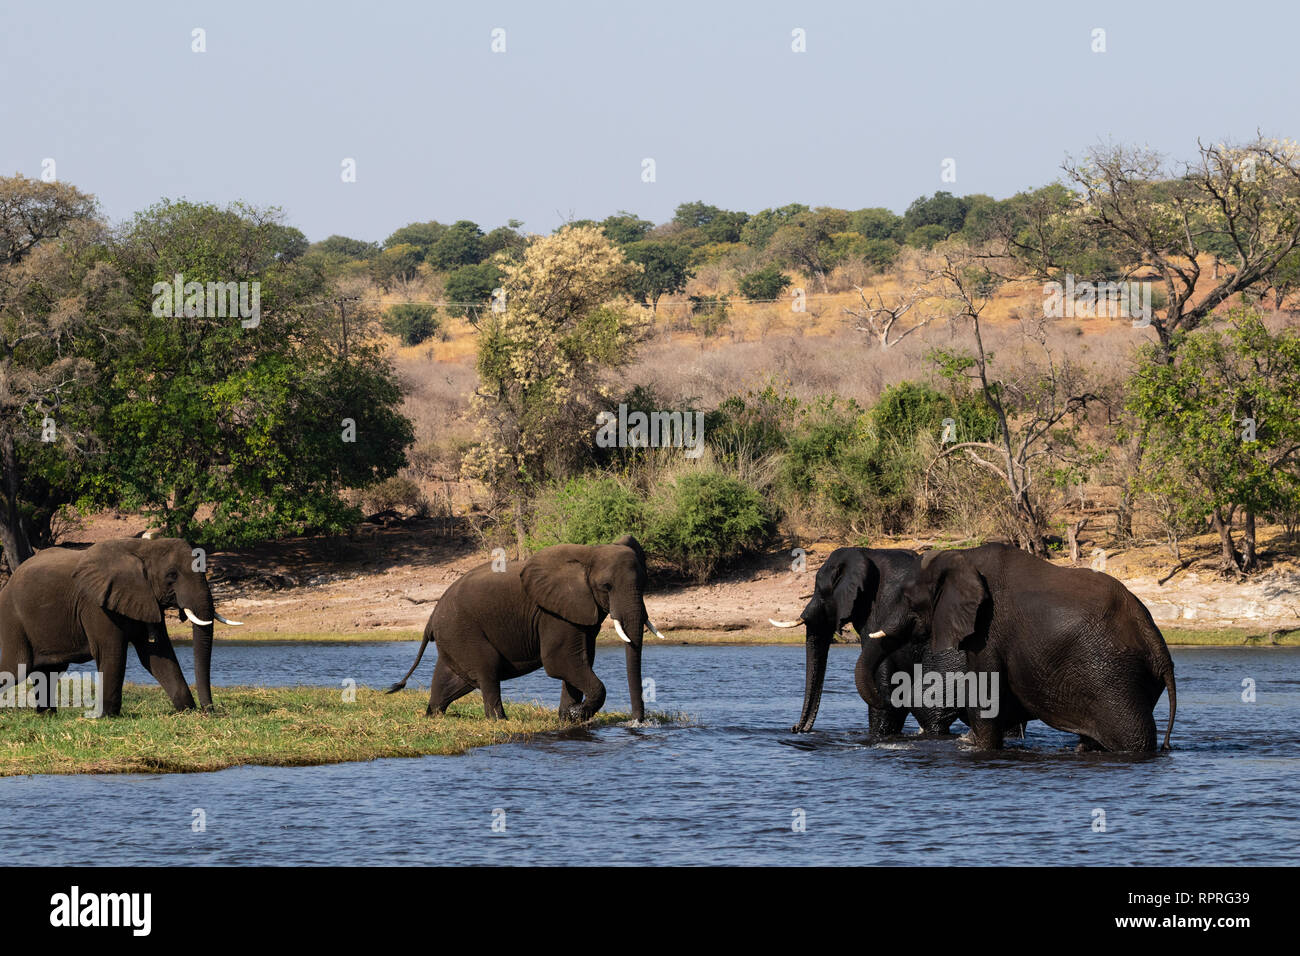 Un petit troupeau de jeunes éléphants de sexe masculin se battent sur la rive du fleuve, le parc national de Chobe, près de la ville de Kasane au Botswana Banque D'Images